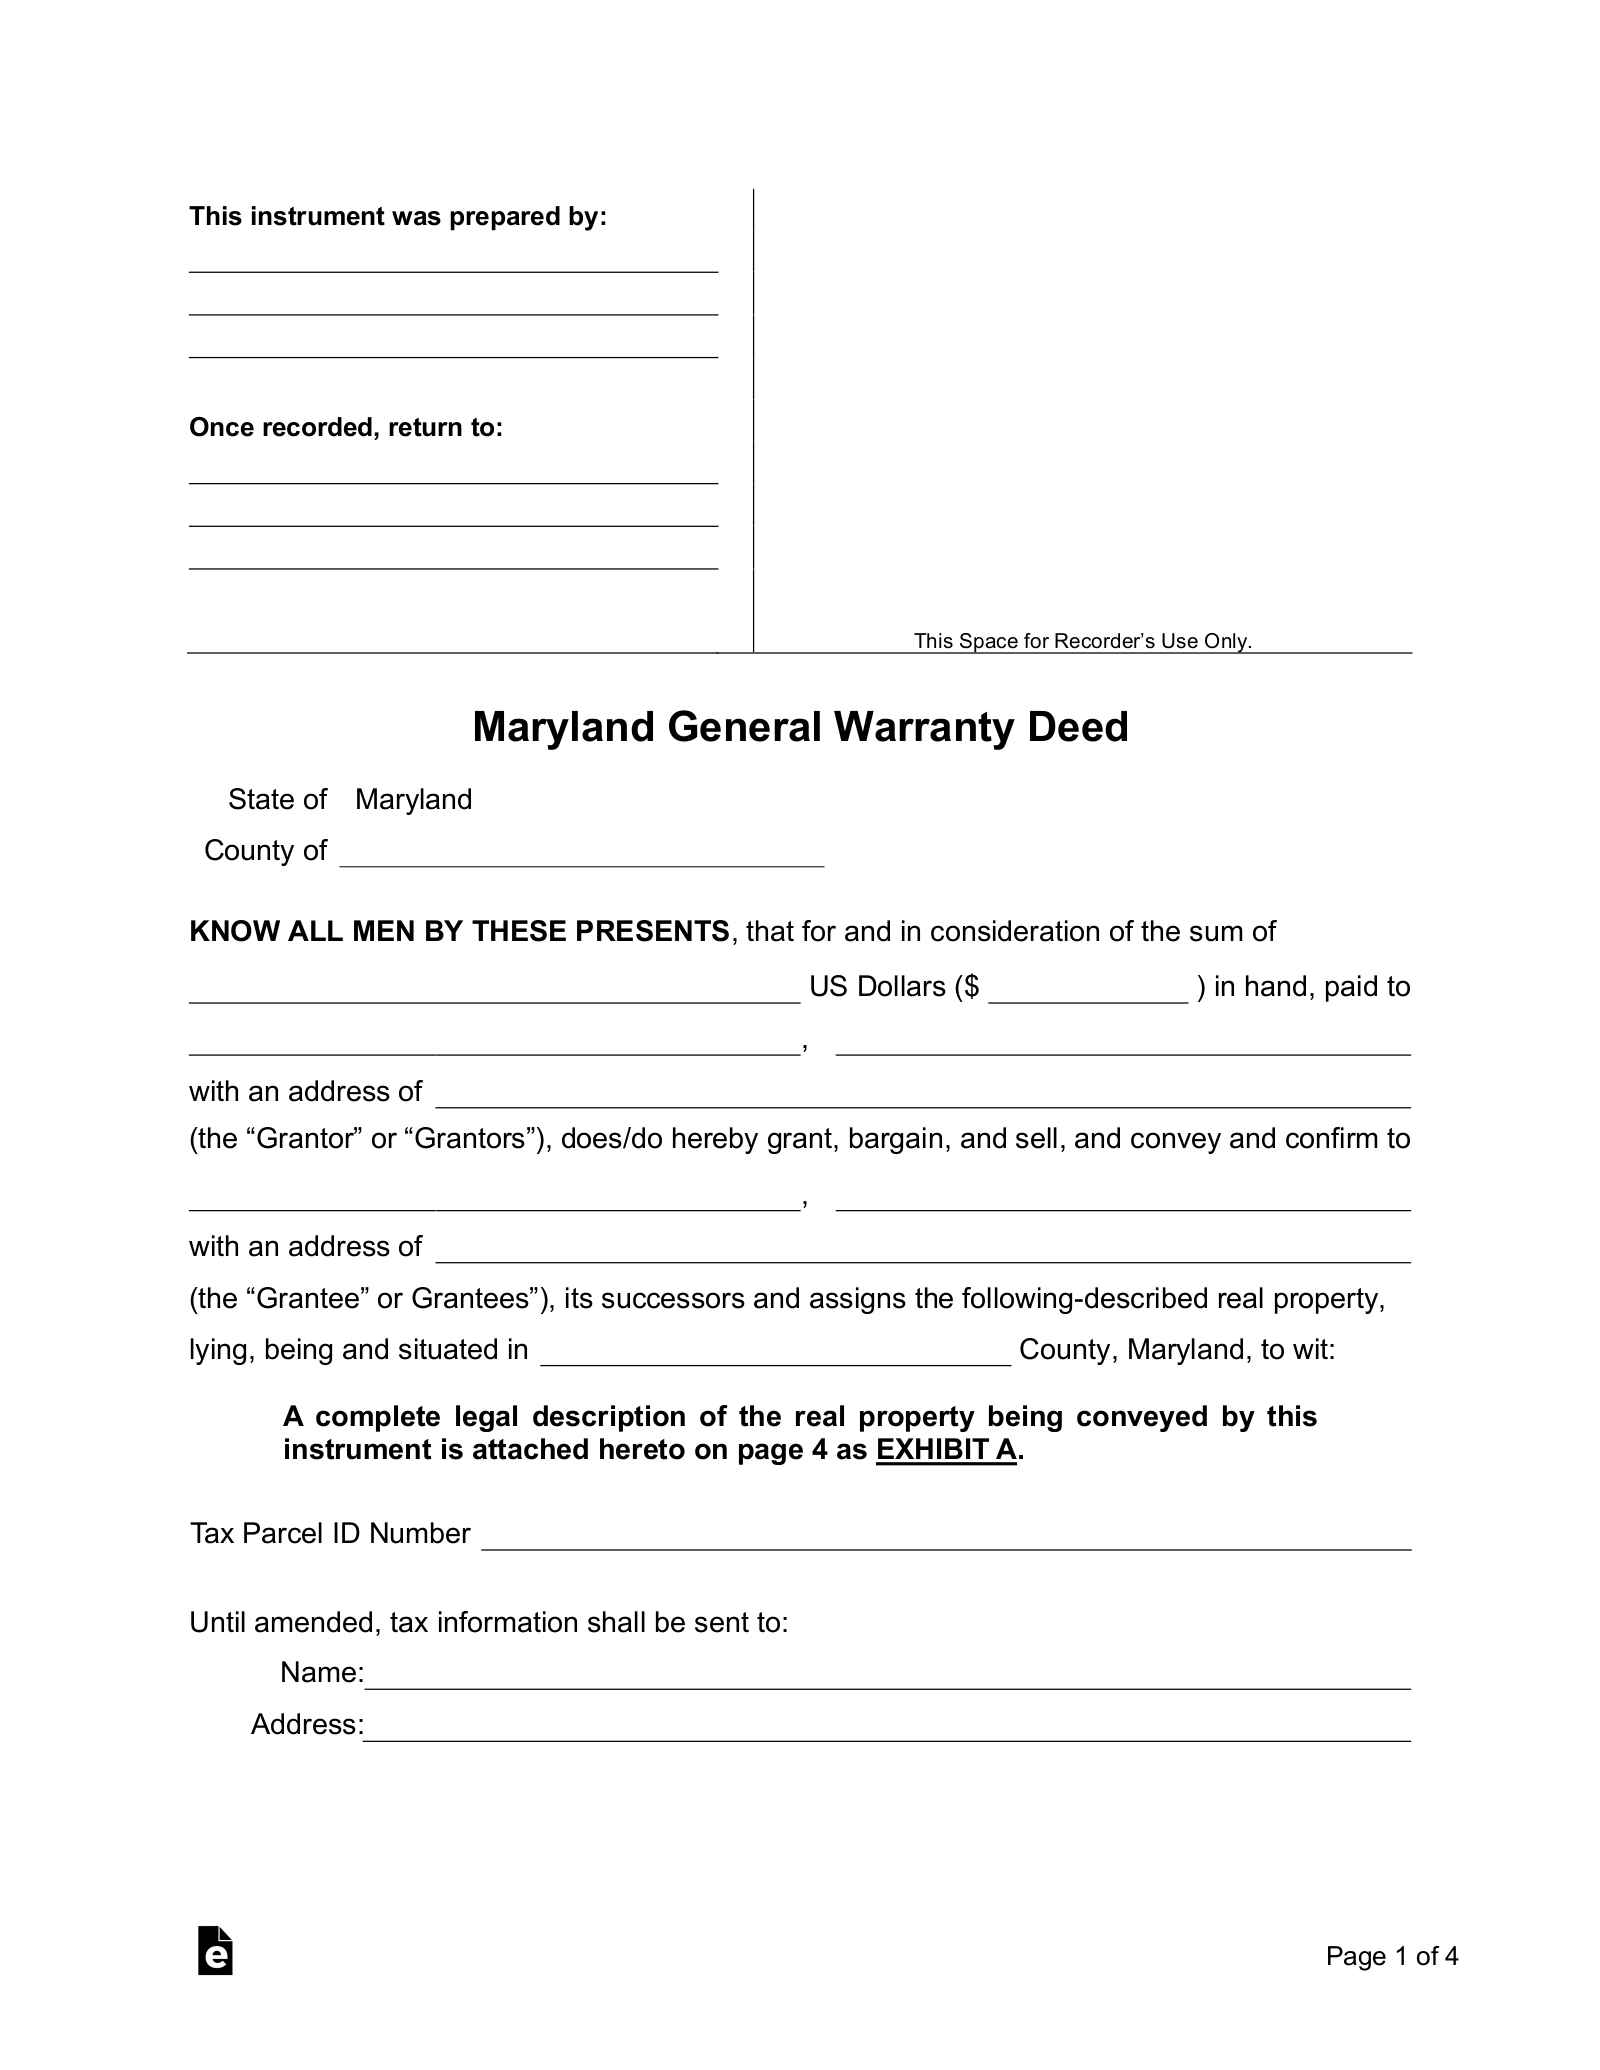 free-florida-general-warranty-deed-form-pdf-word-eforms